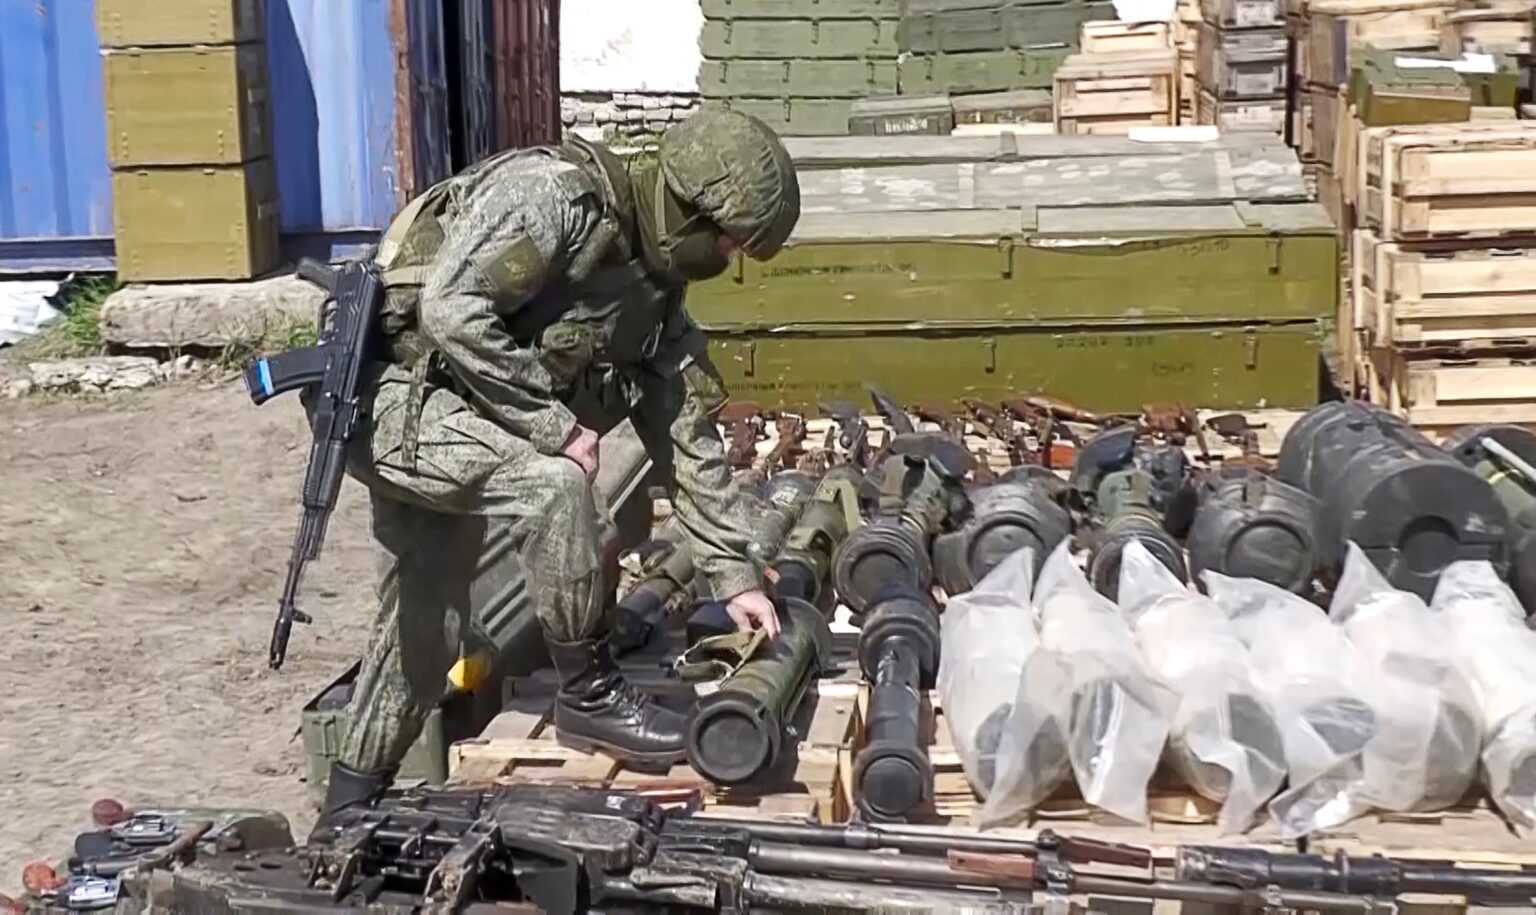 В сети появились кадры захваченного вооружения ВС России у солдат ВСУ